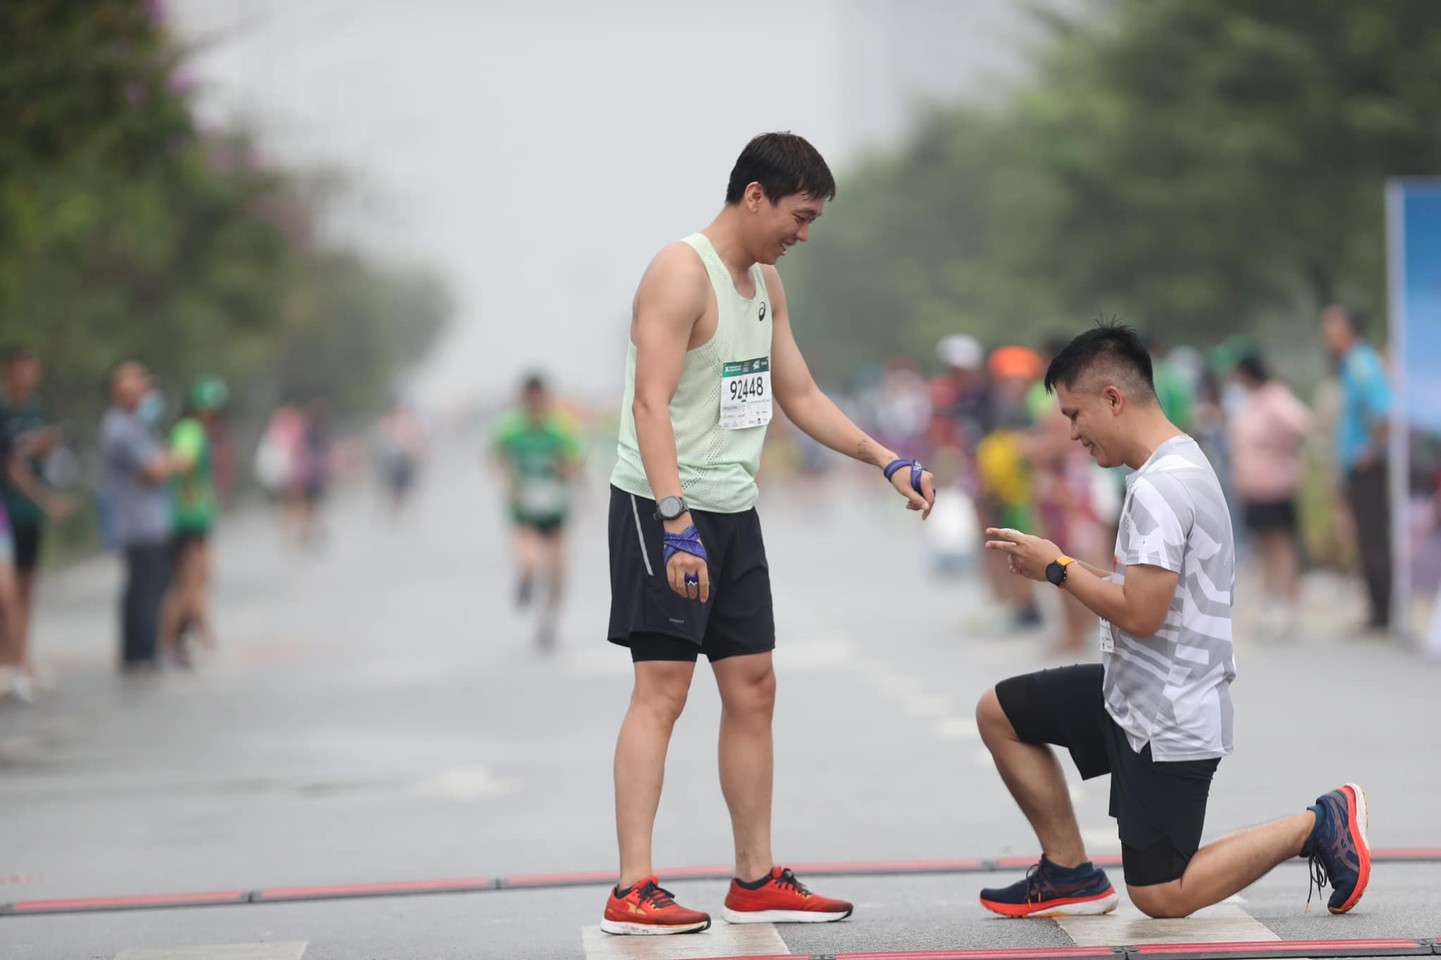 Chàng trai quỳ gối cầu hôn nửa kia khi cả hai vừa chạy đến đích (Ảnh: VnExpress Marathon)